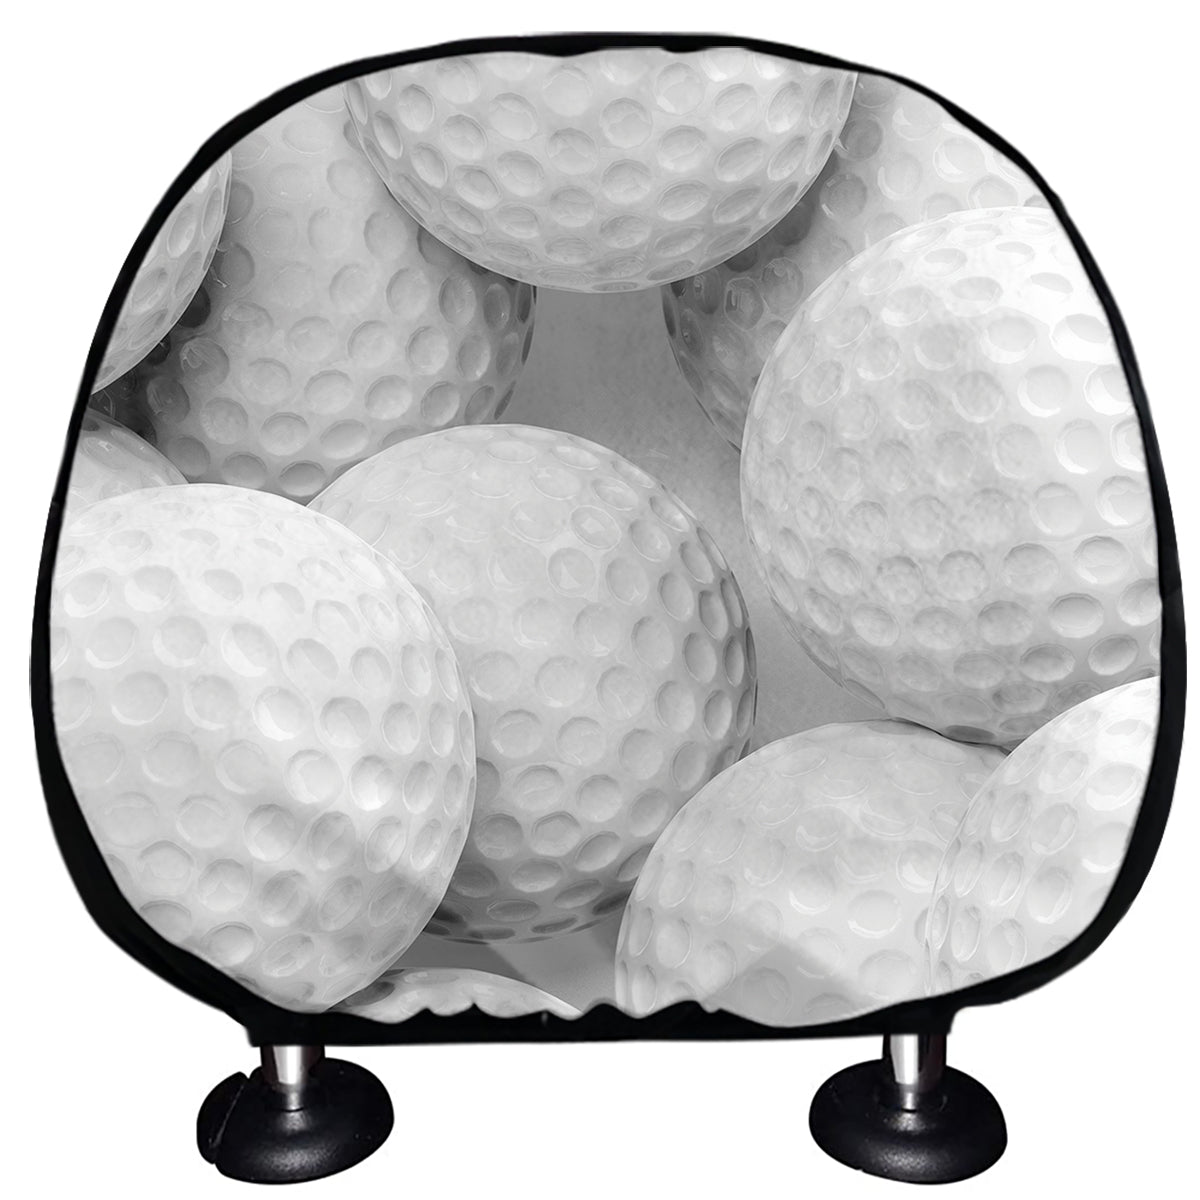 Golf Ball 3D Print Car Headrest Covers